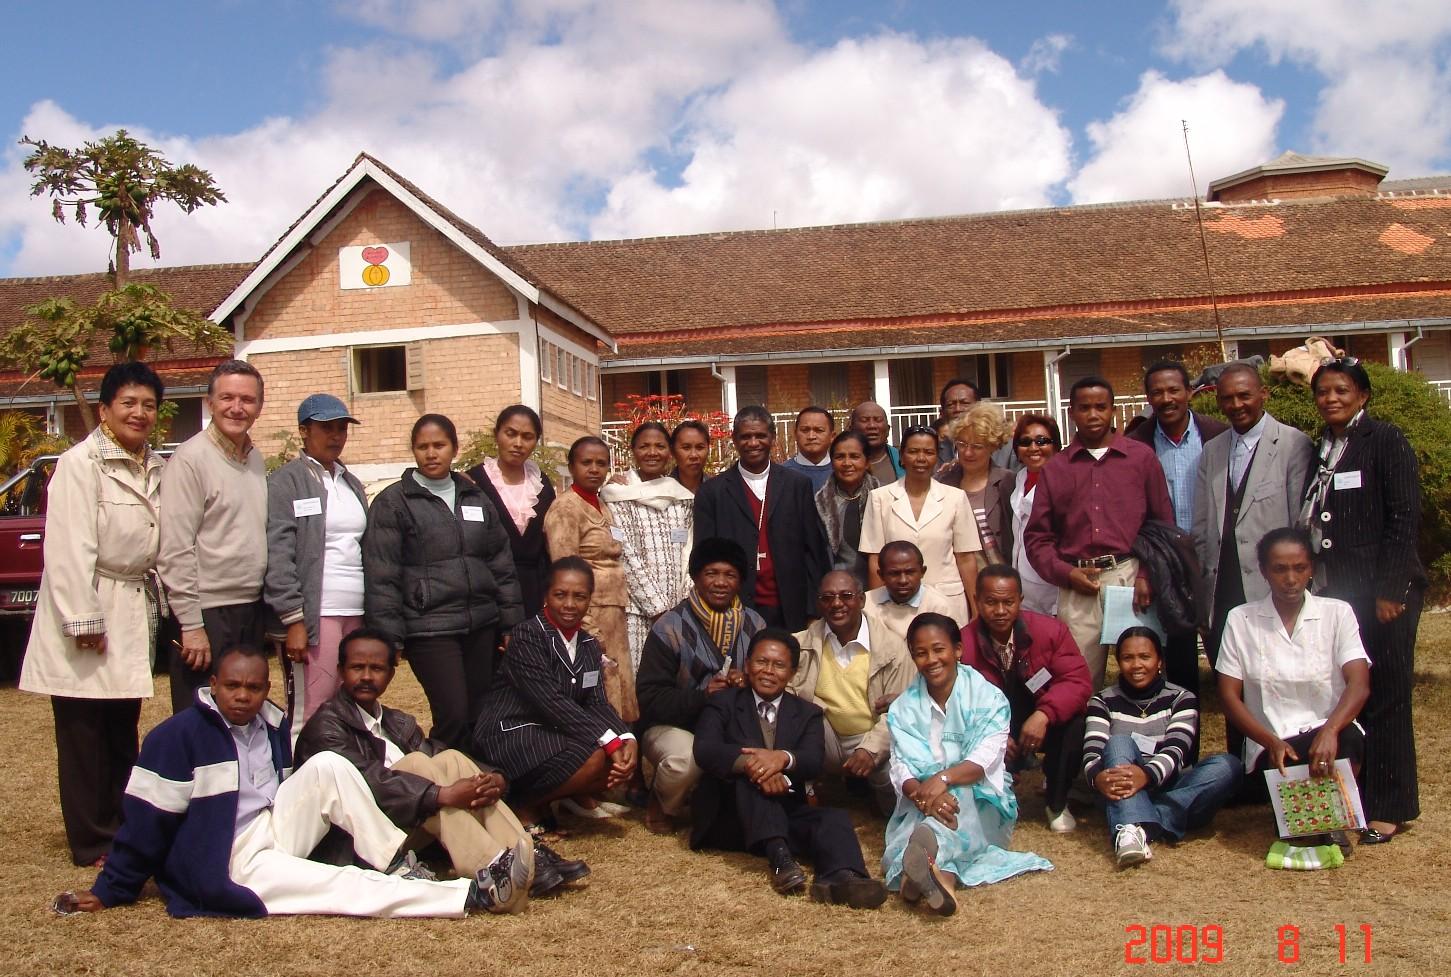 Groupes diocésains avec monseigneur Désiré   1 2008